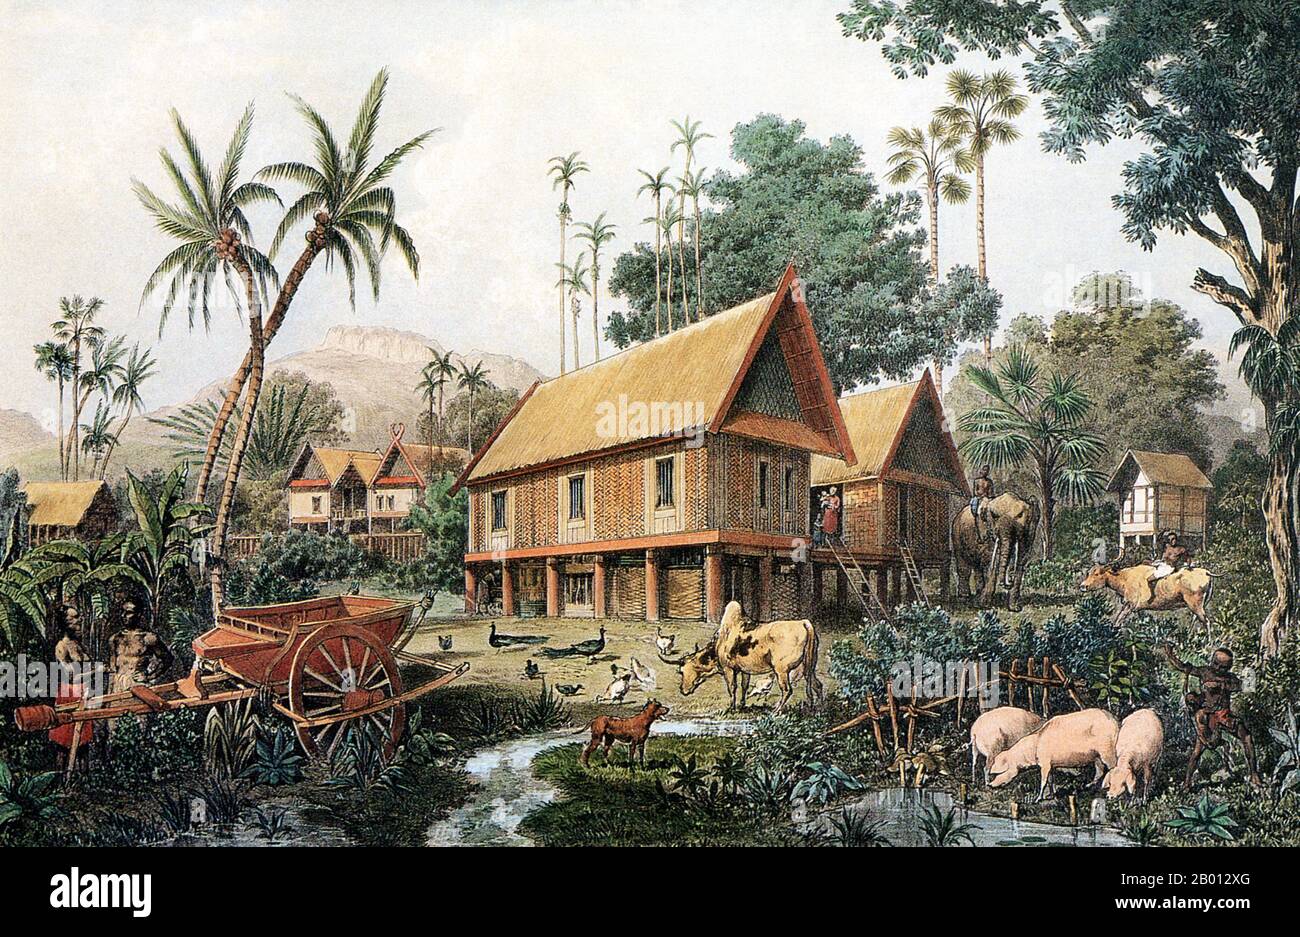 Laos : la maison d'une riche famille laotienne. Gravure de Louis Delaporte (1842-1925), 1866-1867. La maison est faite de rotin et de bambou. Il est soutenu par des pilotis de bois dur pour protéger le bâtiment en saison de Monsoon. Sous la maison se trouve une course de poulet et de porc. Les paons se promènent dans le jardin et le hameau est entouré de cocotiers. Banque D'Images